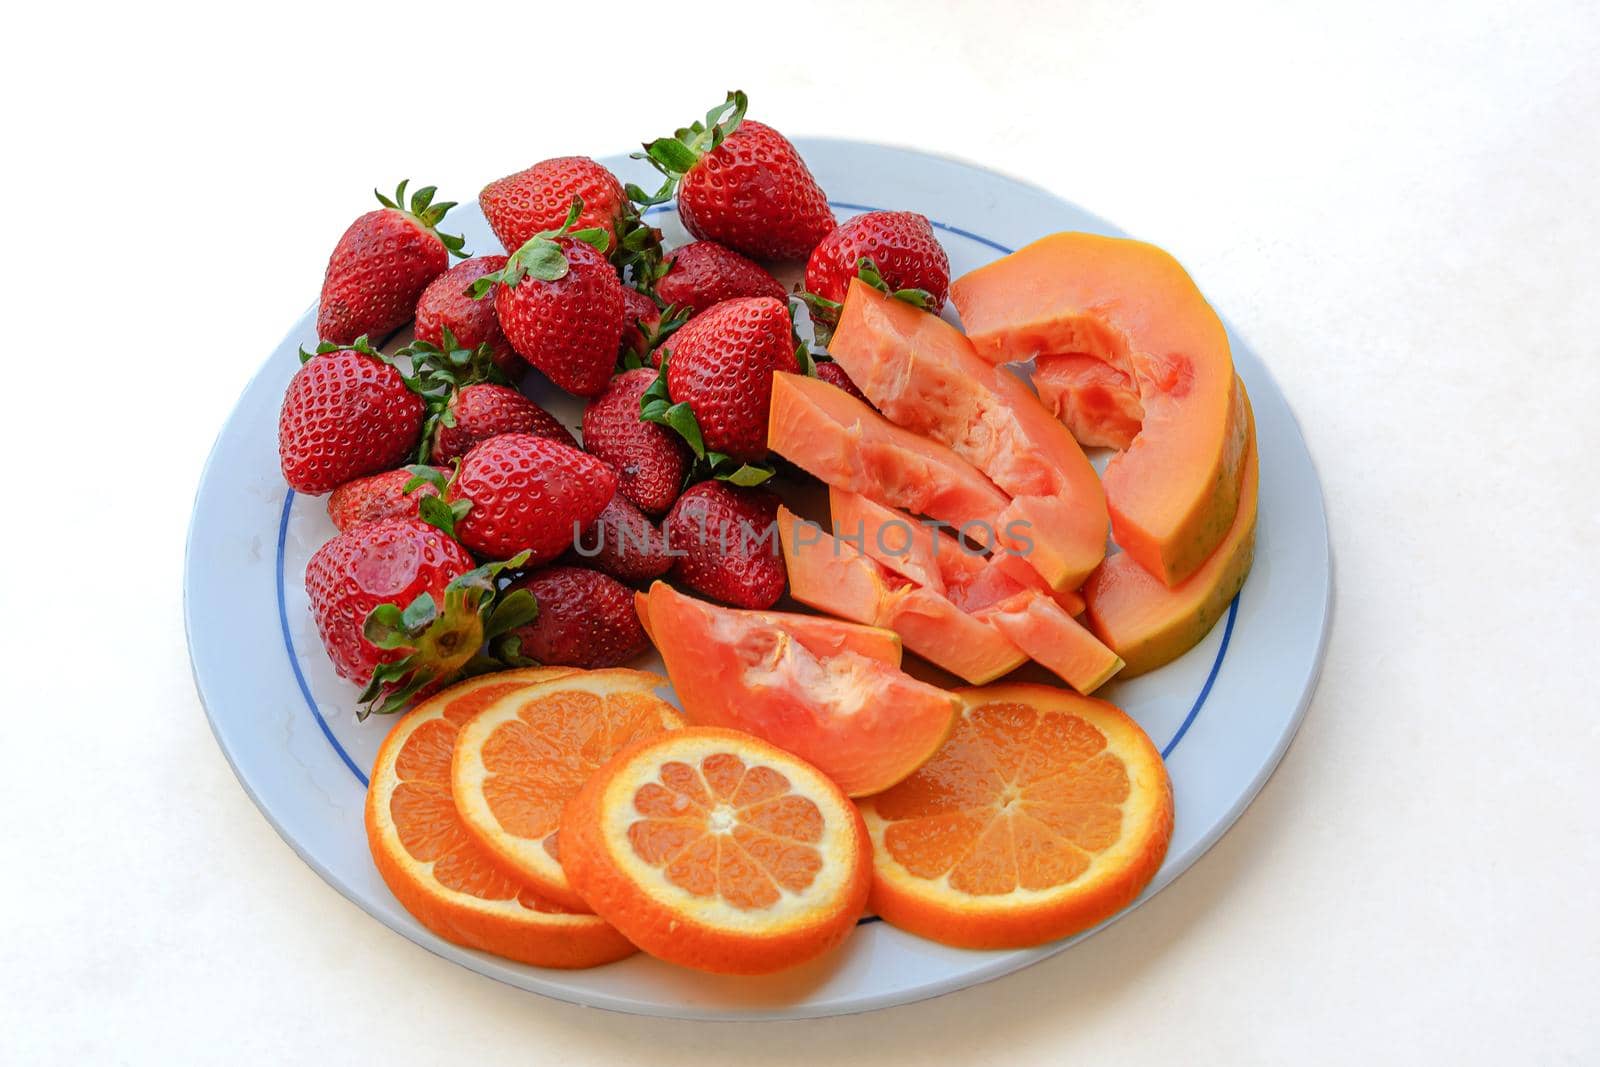 Fruit mix, strawberries, papaya and orange slices. Blurry background, close-up. Stock photo